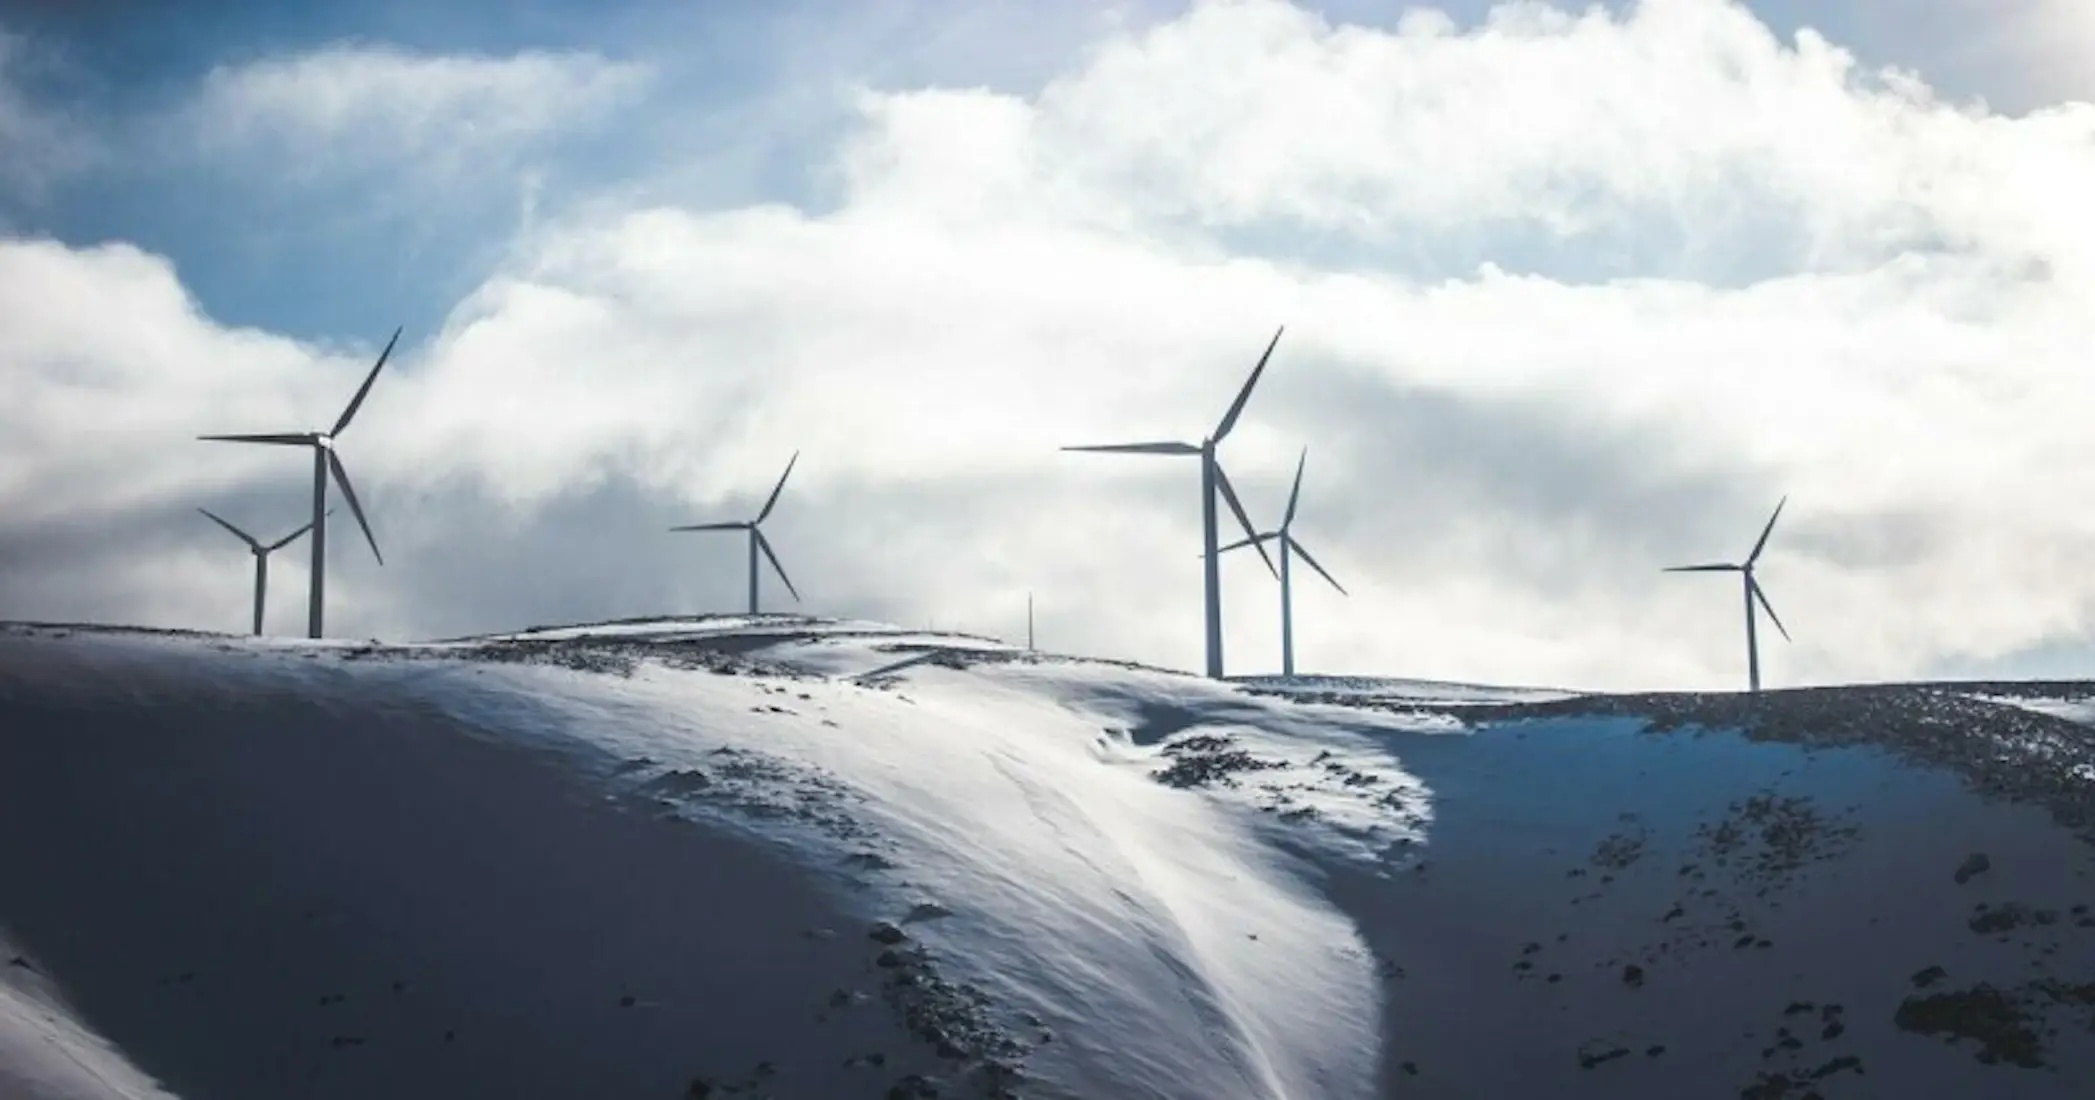 Windmill turbines on a snowy hill